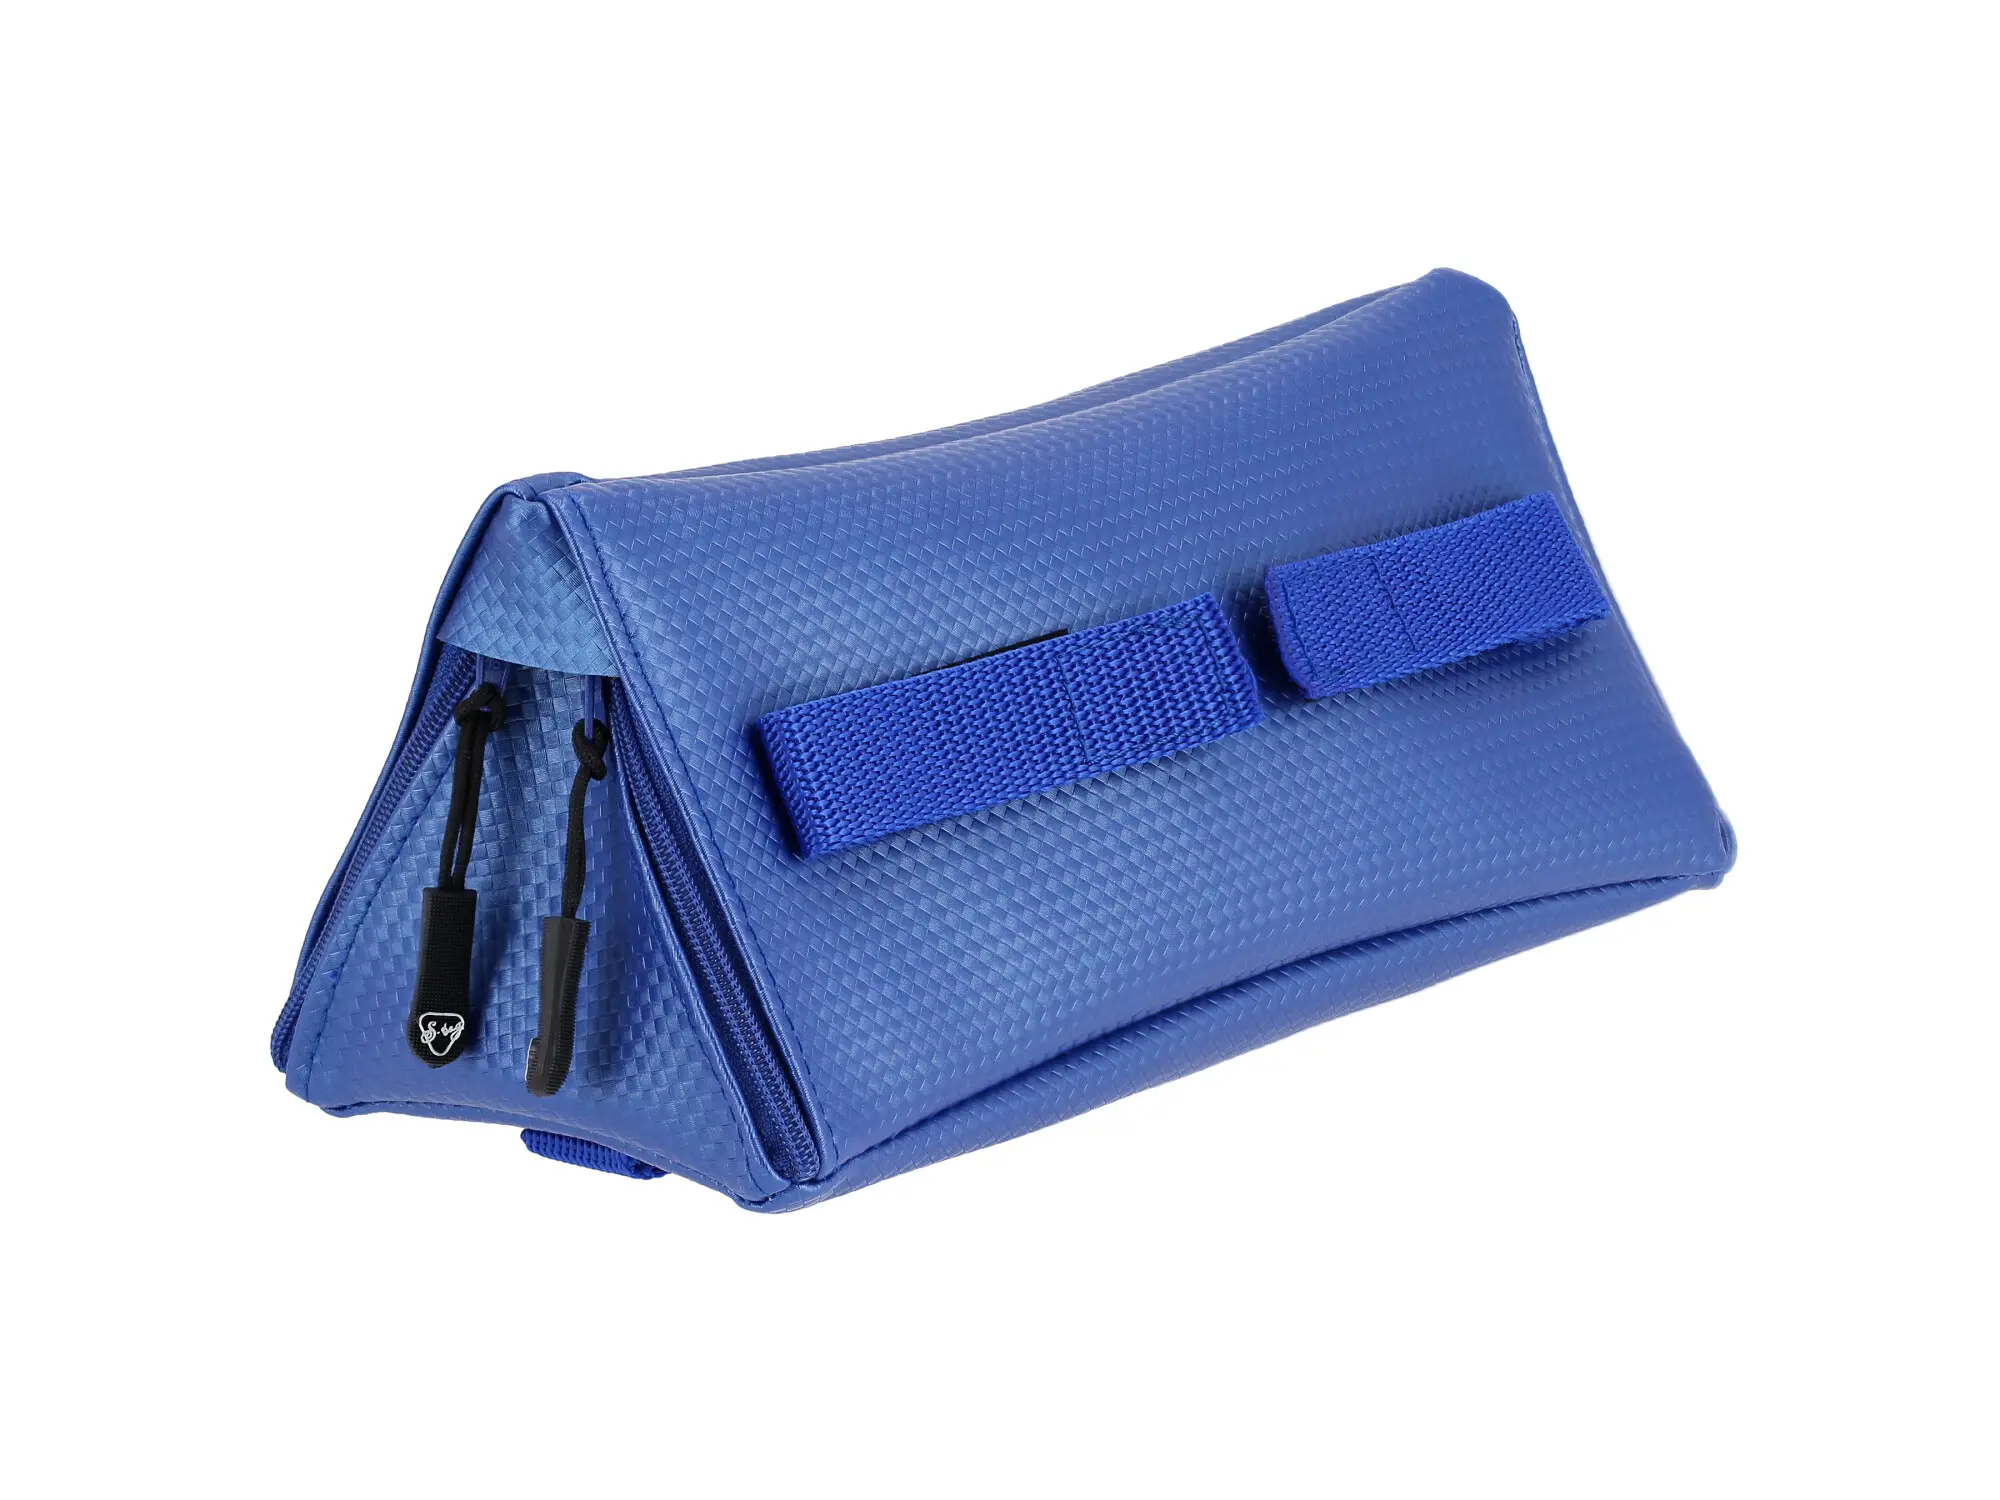 S-Bag Werkzeugtasche, Kunstleder - Carbon Blau, Item no: 10075876 - Image 1